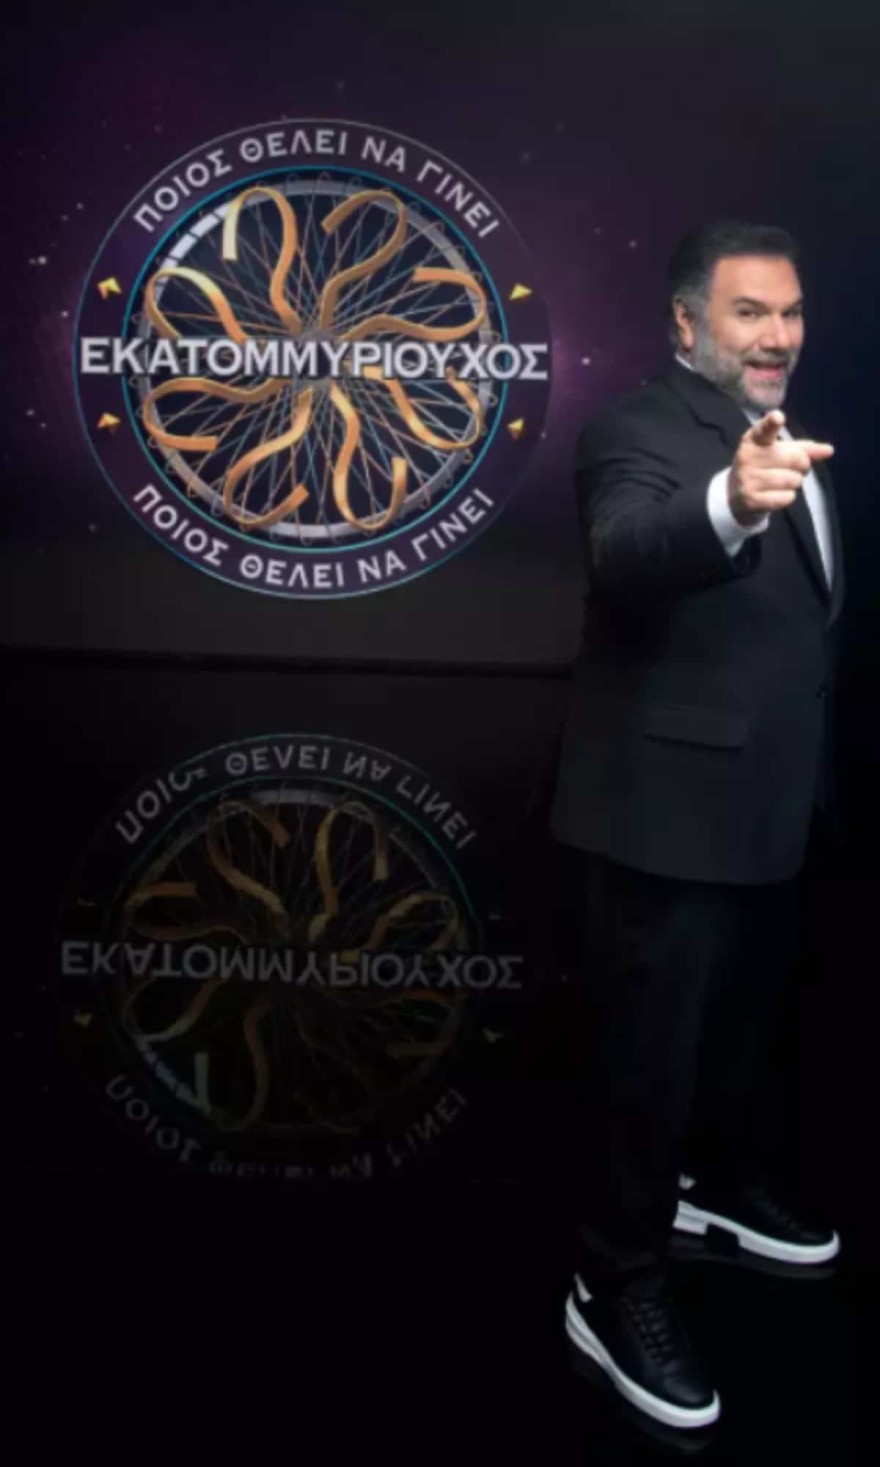 Η επίσημη ανακοίνωση του ΑΝΤ1 για το τηλεπαιχνίδι με τον Γρηγόρη Αρναούτογλου  Ποιος θέλει να γίνει εκατομμυριούχος